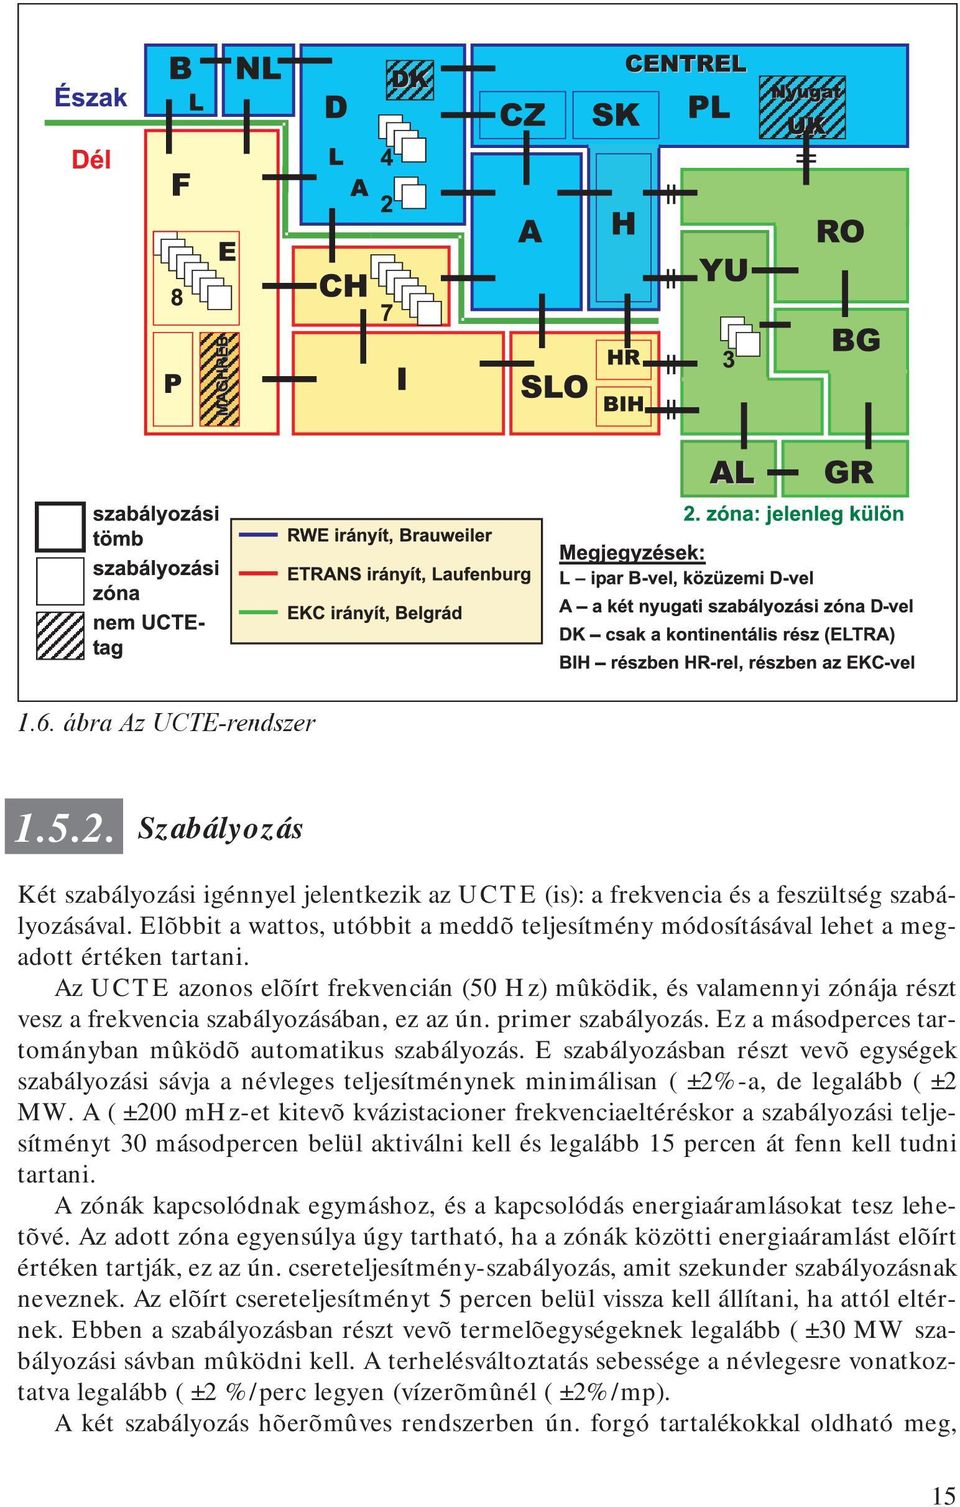 Az UCTE azonos elõírt frekvencián (50 Hz) mûködik, és valamennyi zónája részt vesz a frekvencia szabályozásában, ez az ún. primer szabályozás.